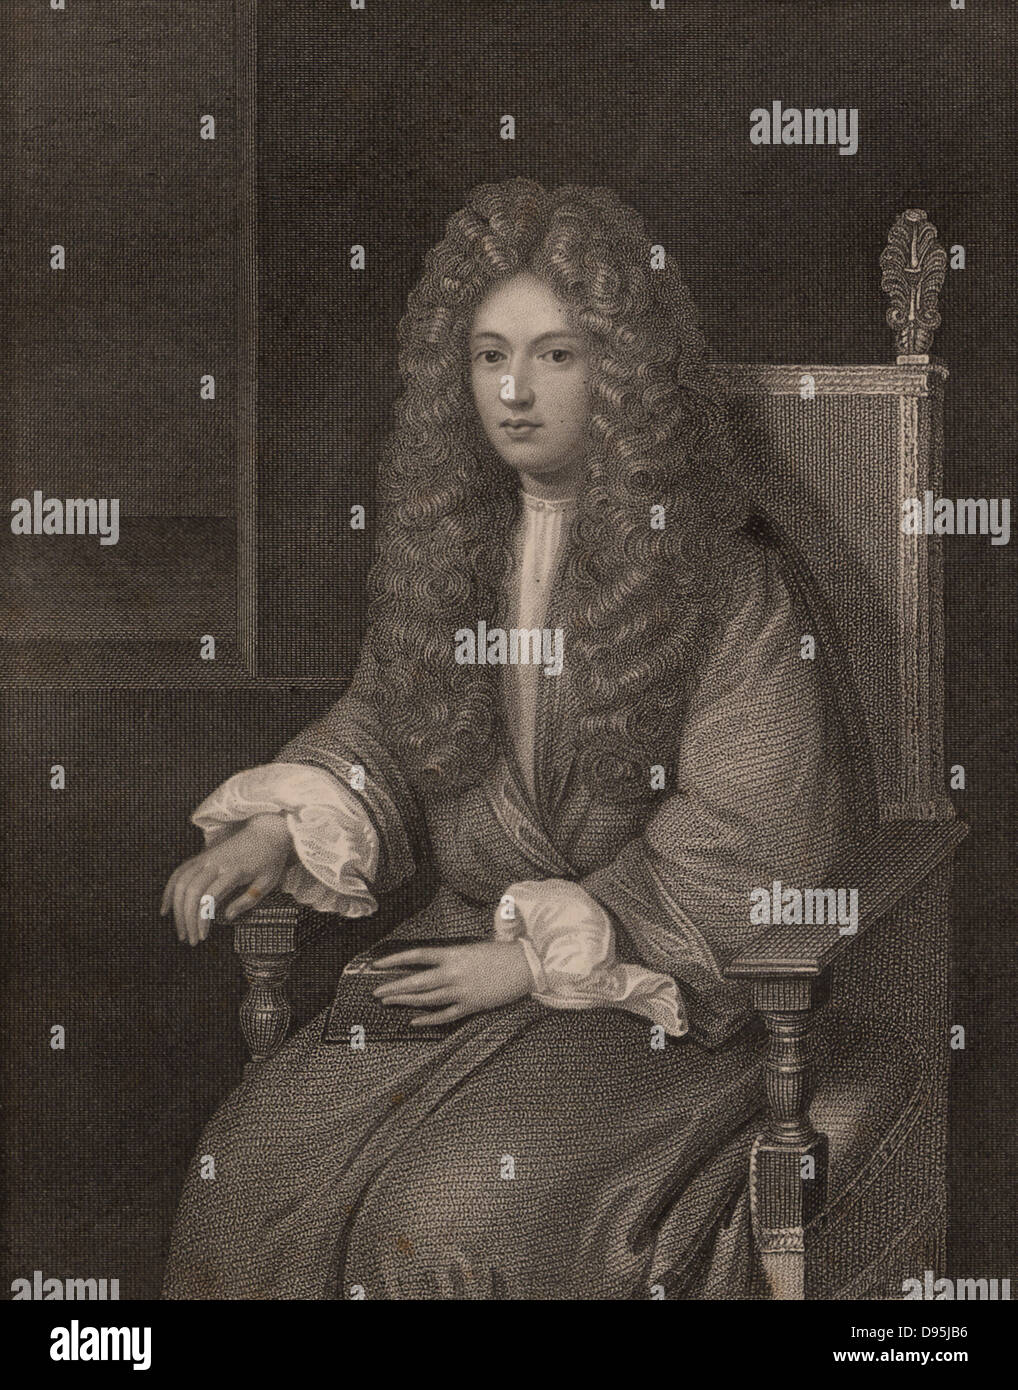 Robert Boyle (1627-1691), Anglo-irischer Chemiker und Physiker, als junger Mann. Gravur. Stockfoto